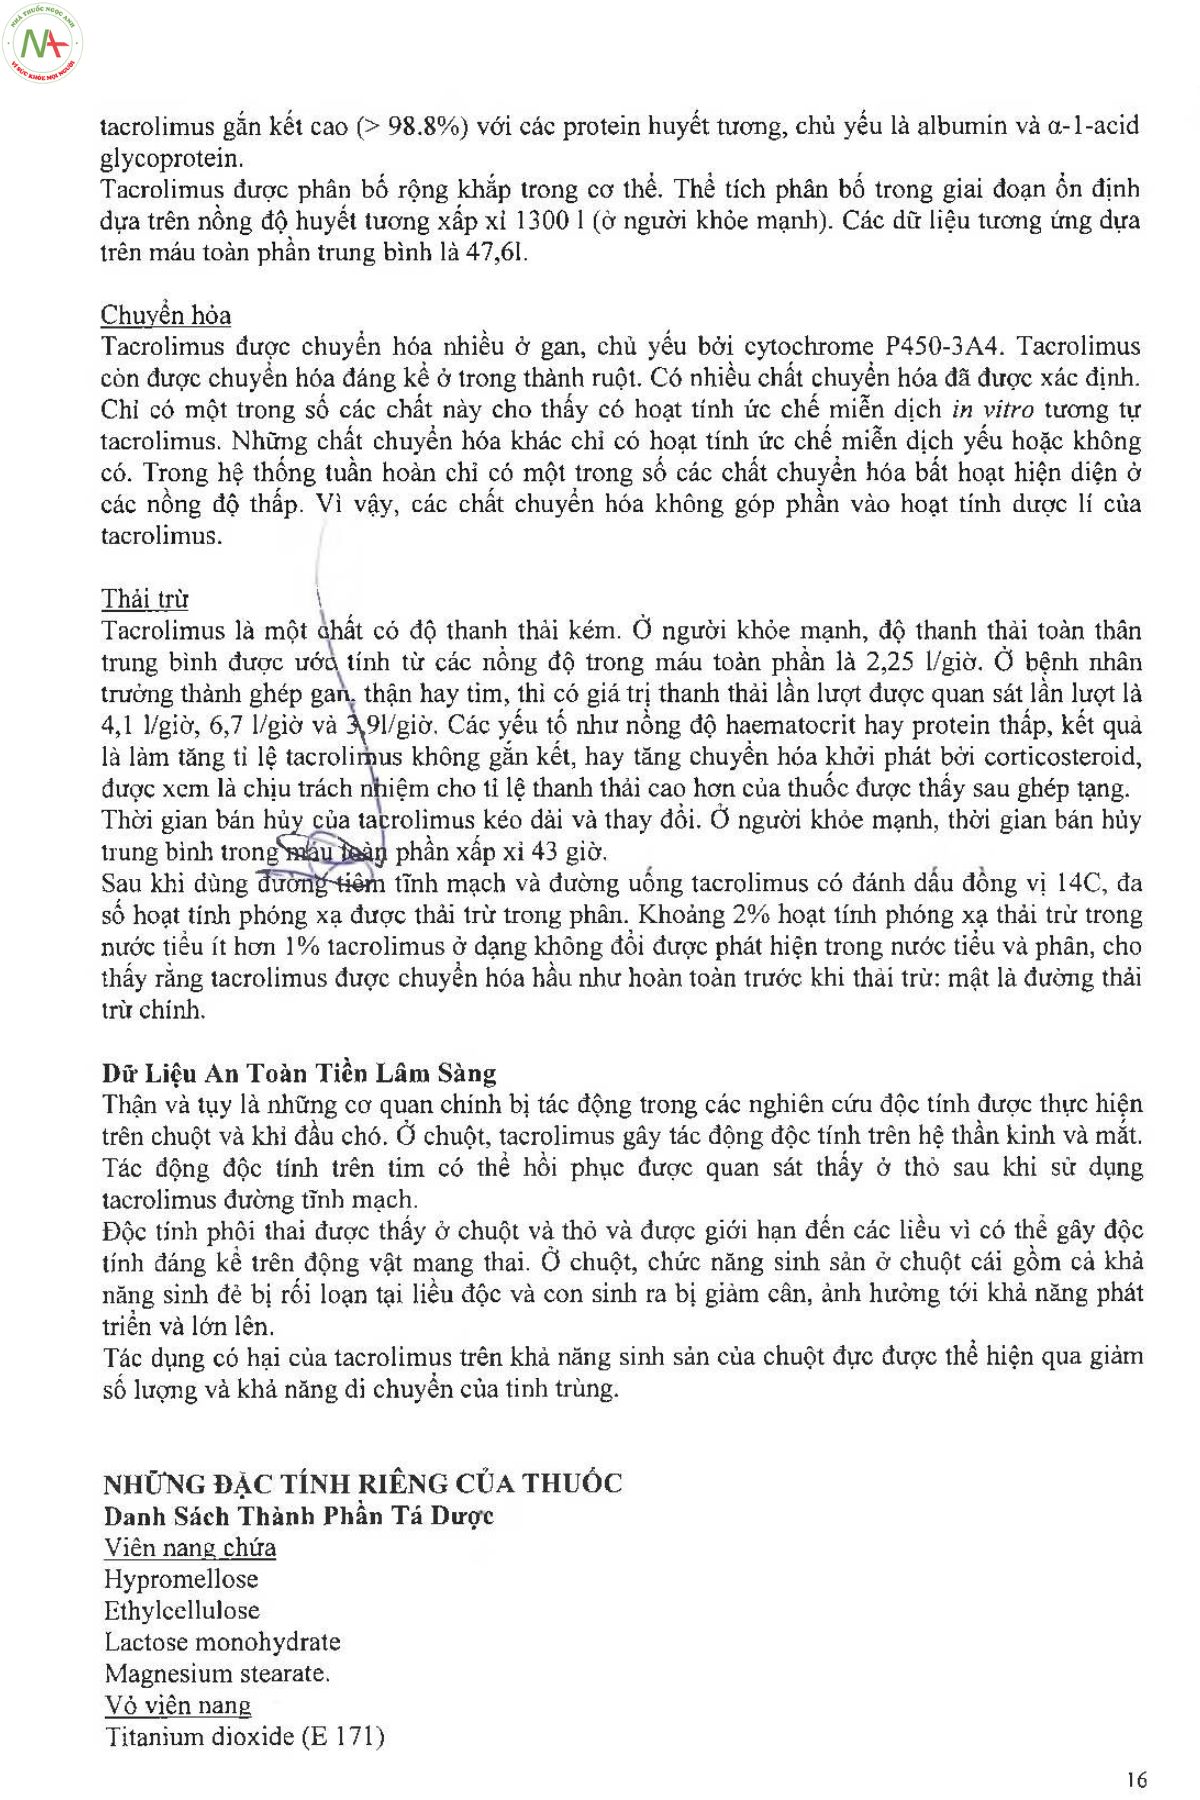 Hướng dẫn sử dụng thuốc Advangraf 5mg trang 16